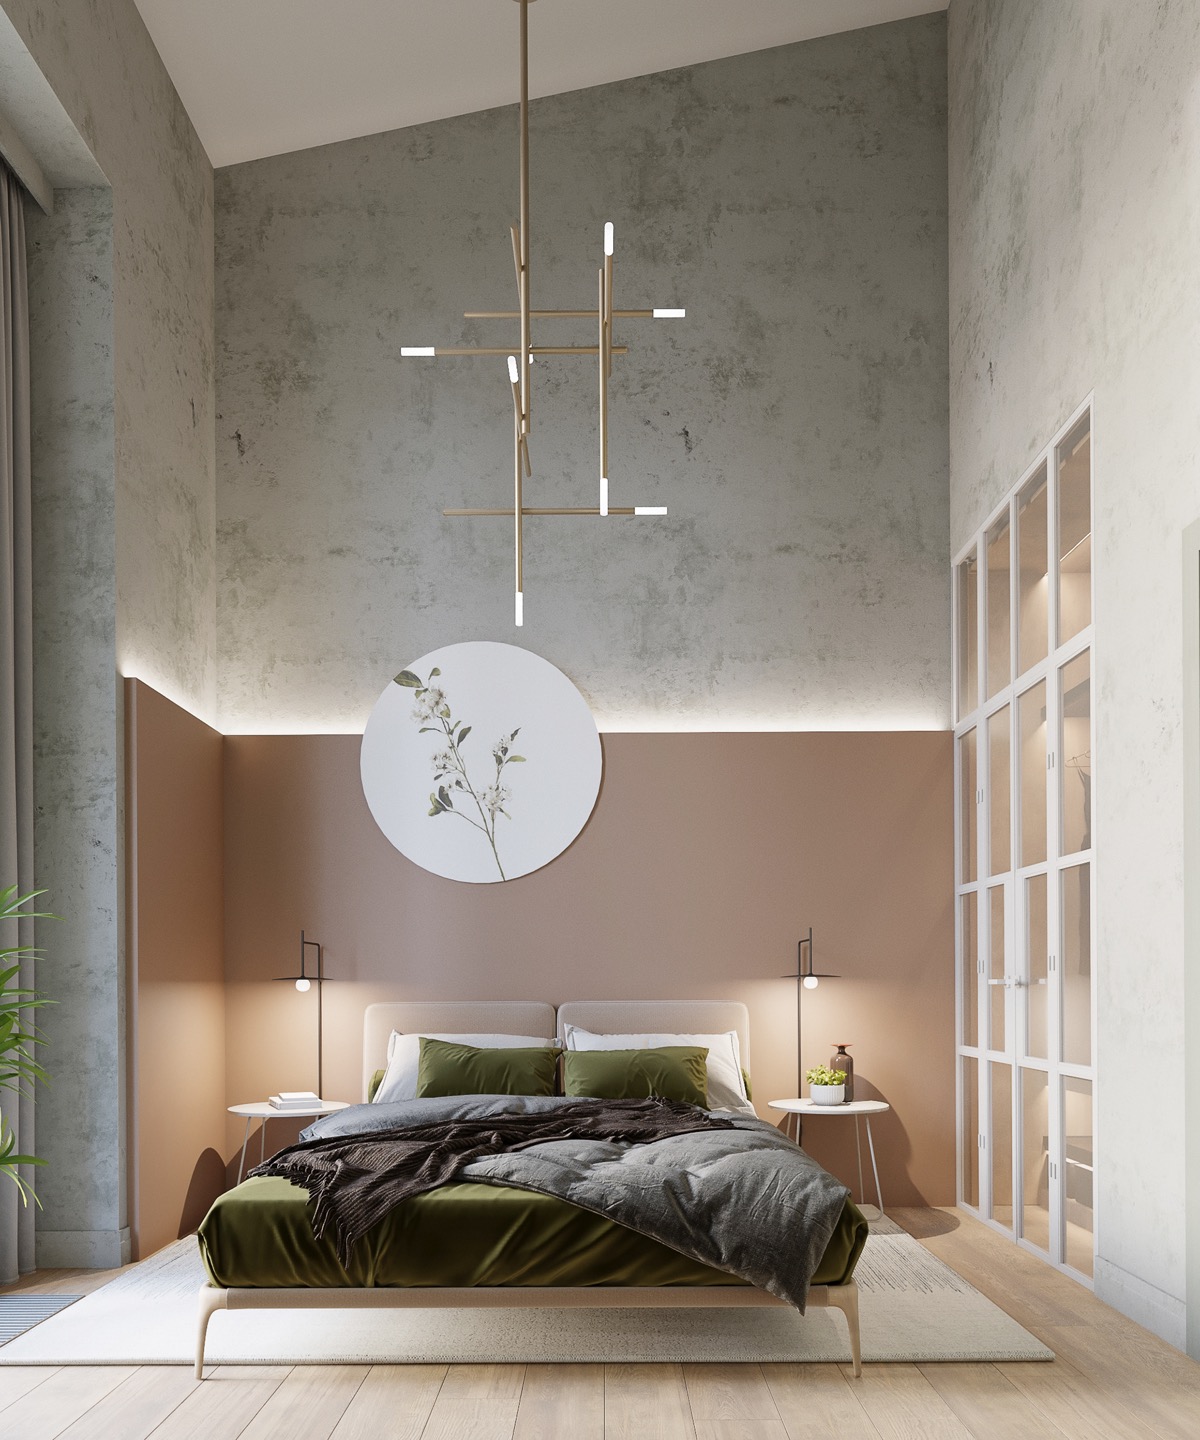 Trong phòng ngủ này, ánh sáng được thiết kế vô cùng khéo léo, vừa đủ để thắp sáng mà không tạo cảm giác nóng bức, kết hợp ăn ý với màu sơn tường.